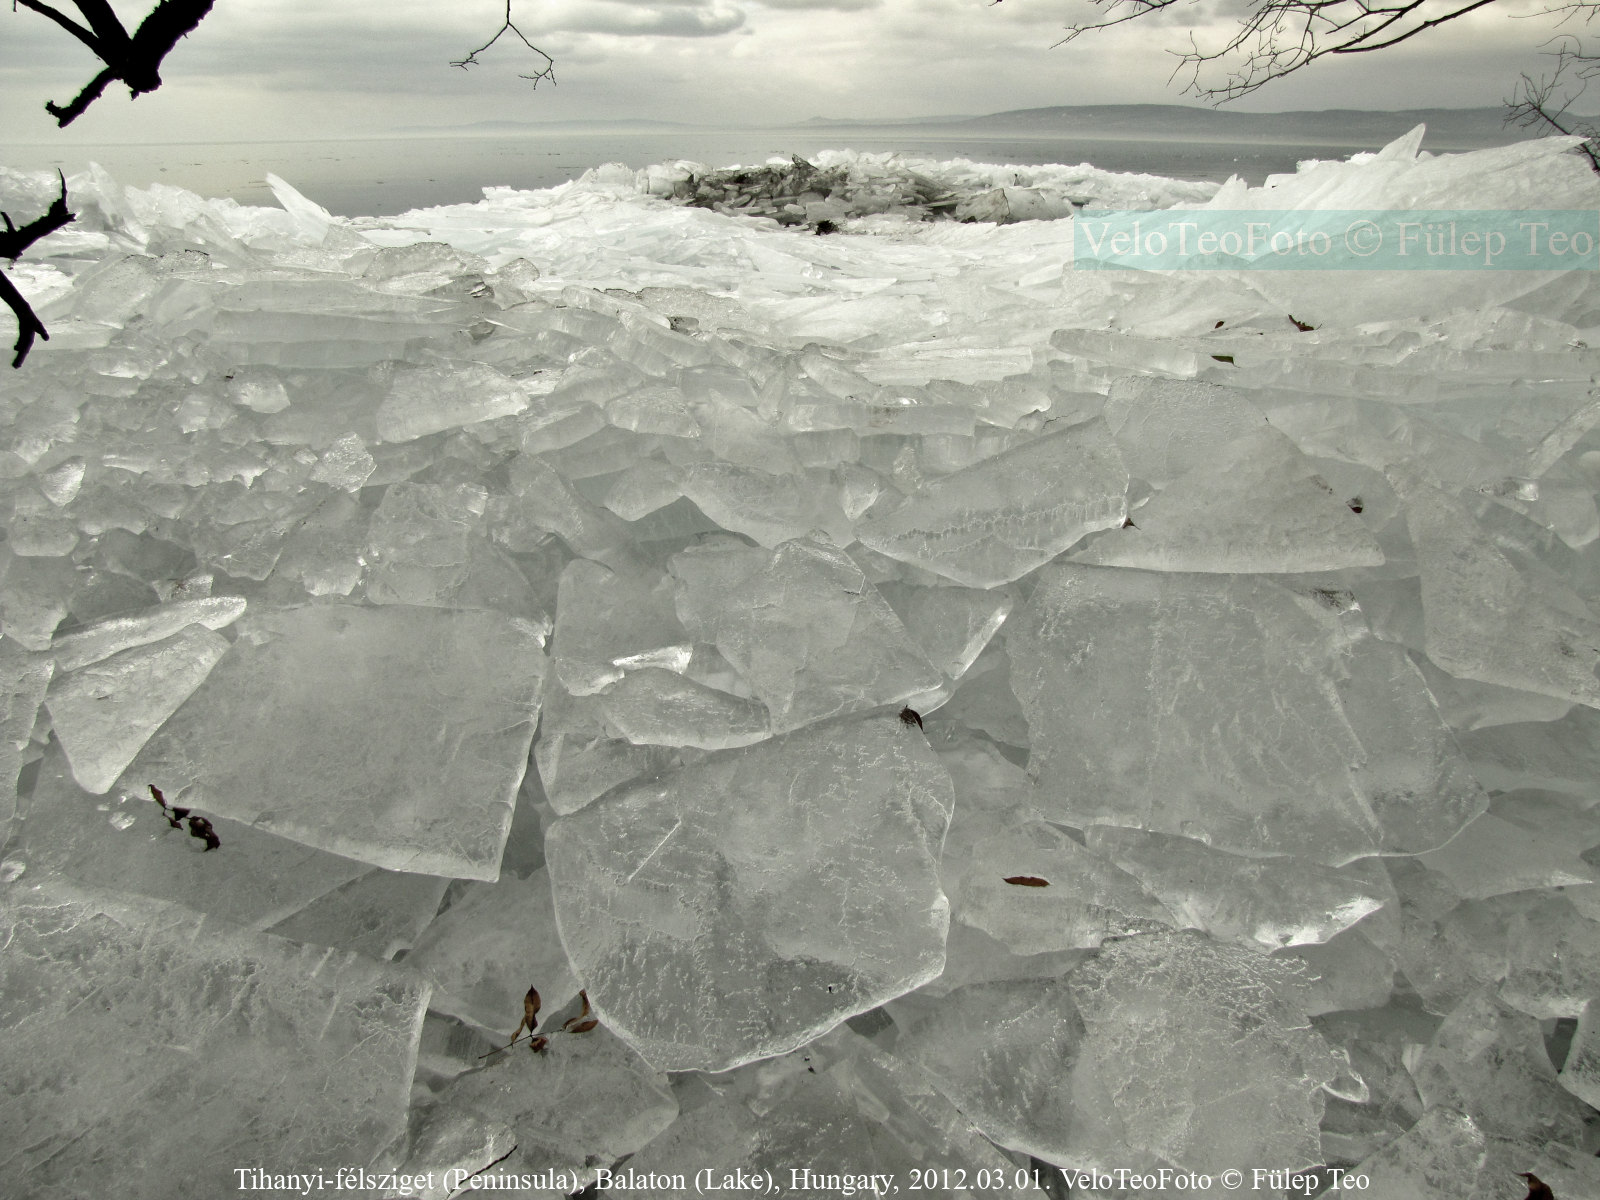 Balatoni jég: torlódó jégtáblák olvadás idején a Balaton partján.